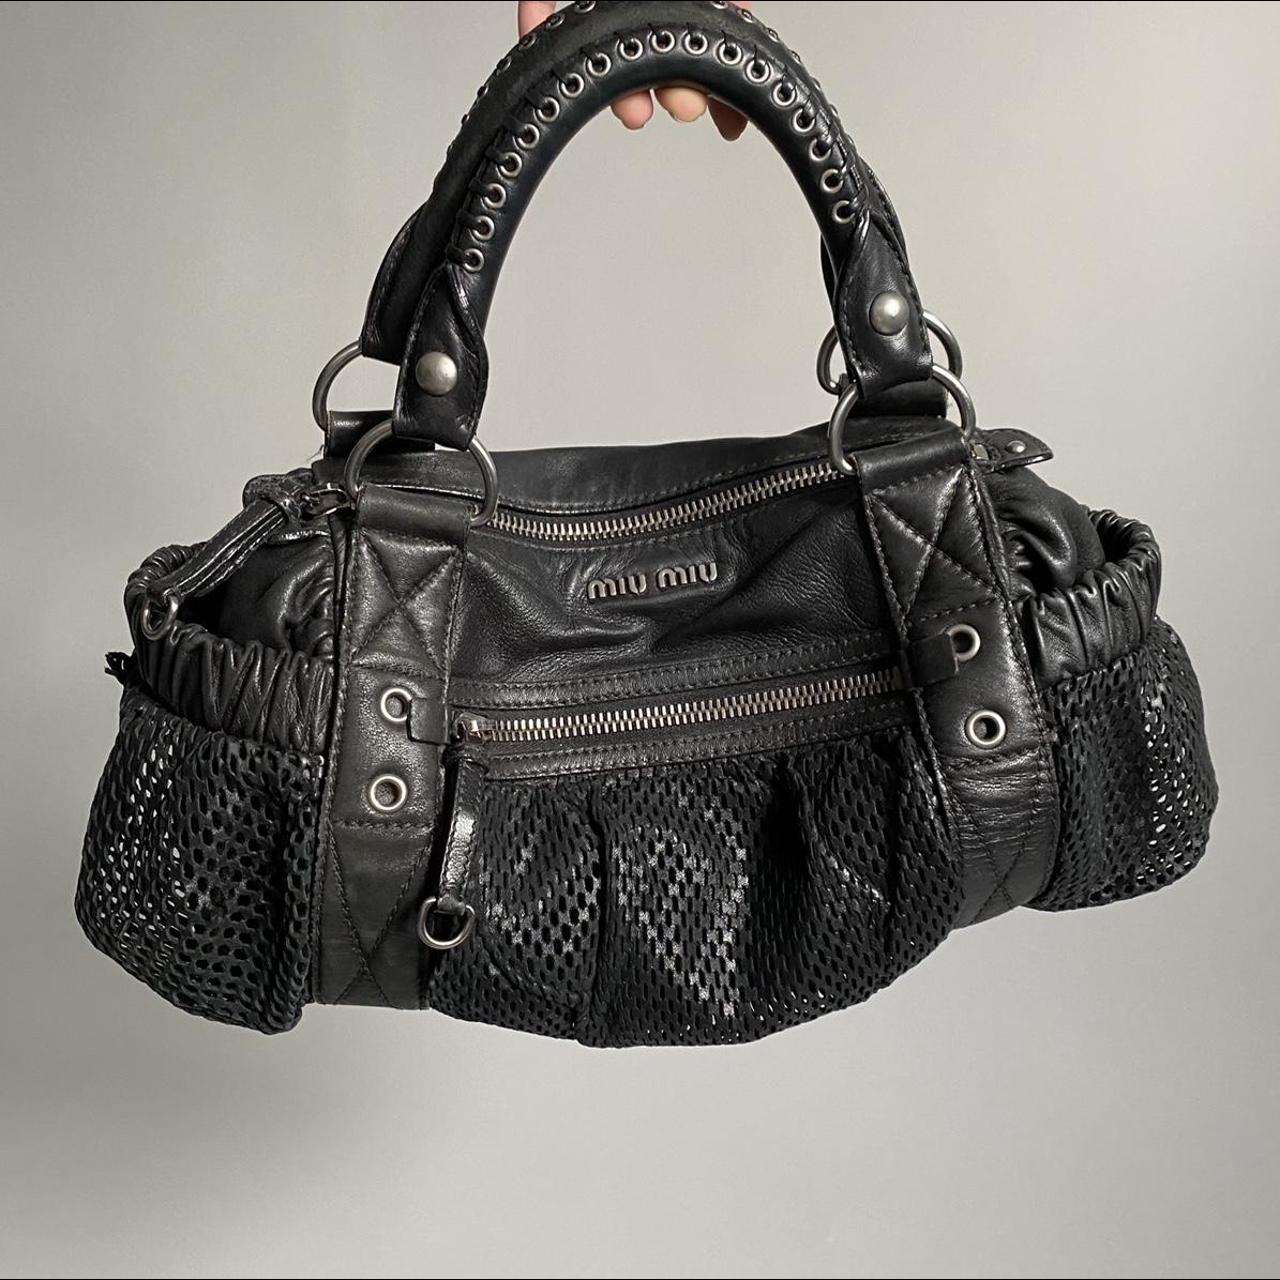 Miu Miu Women's Black Bag